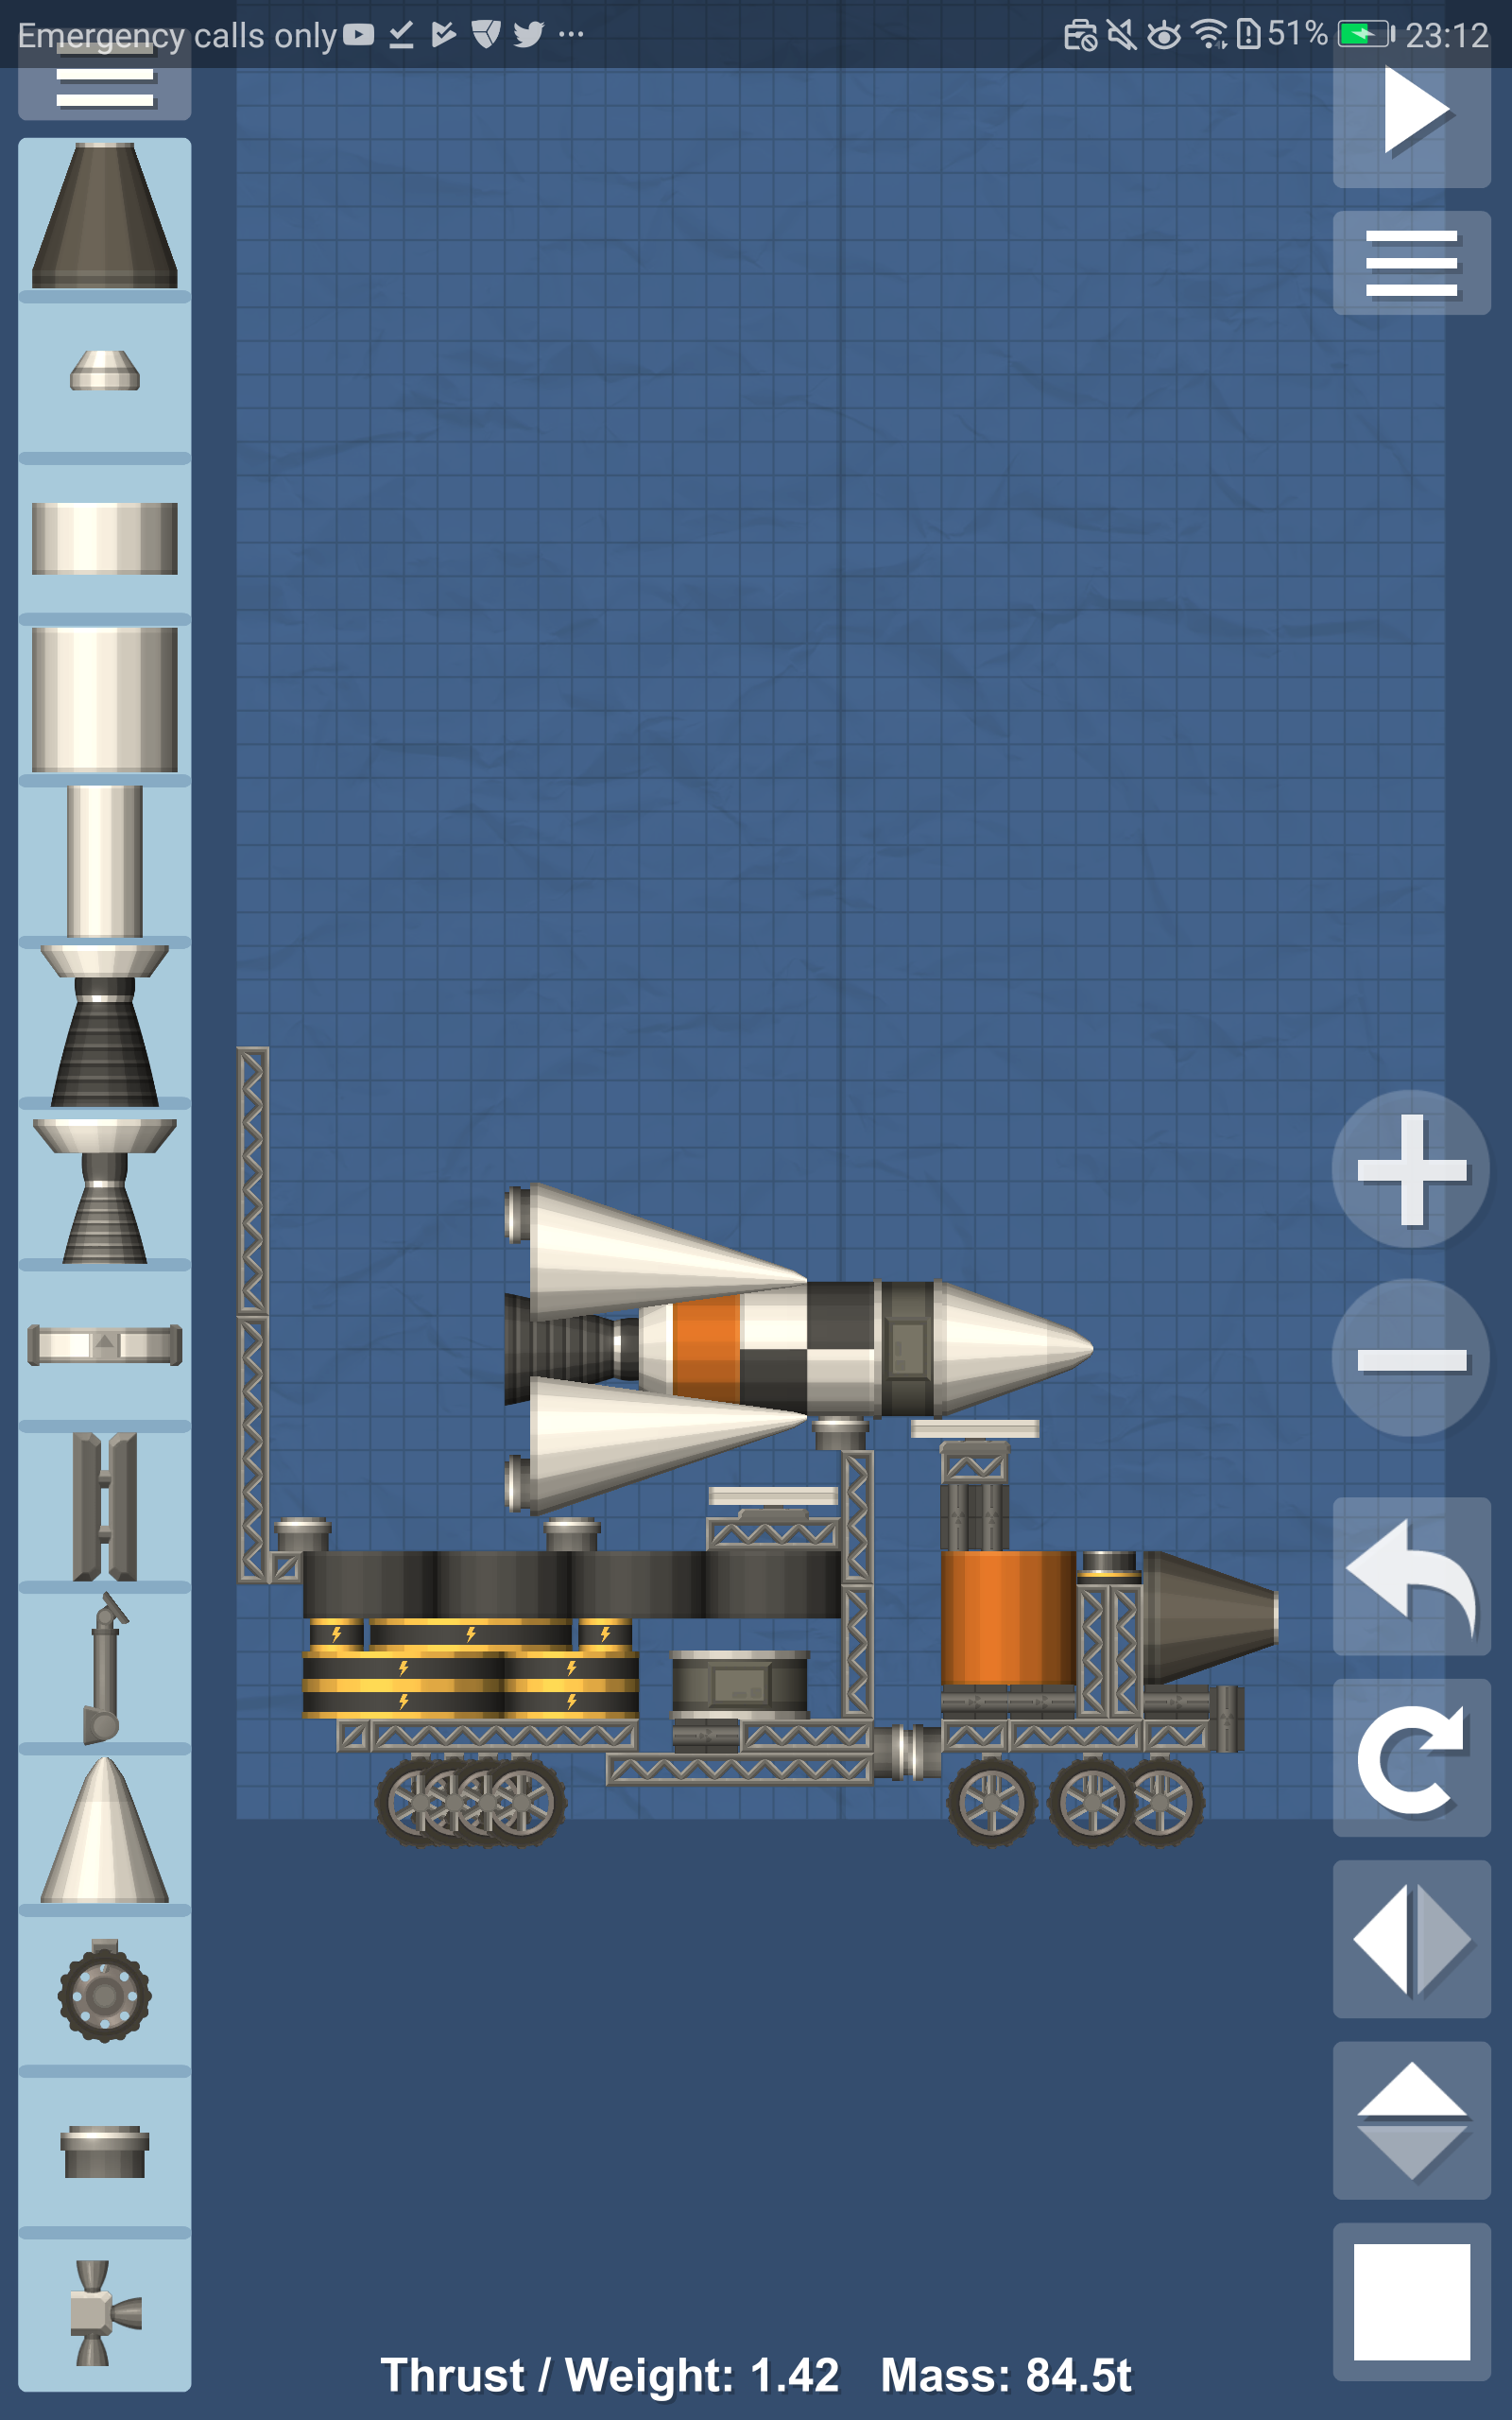 orbital rocket simulation